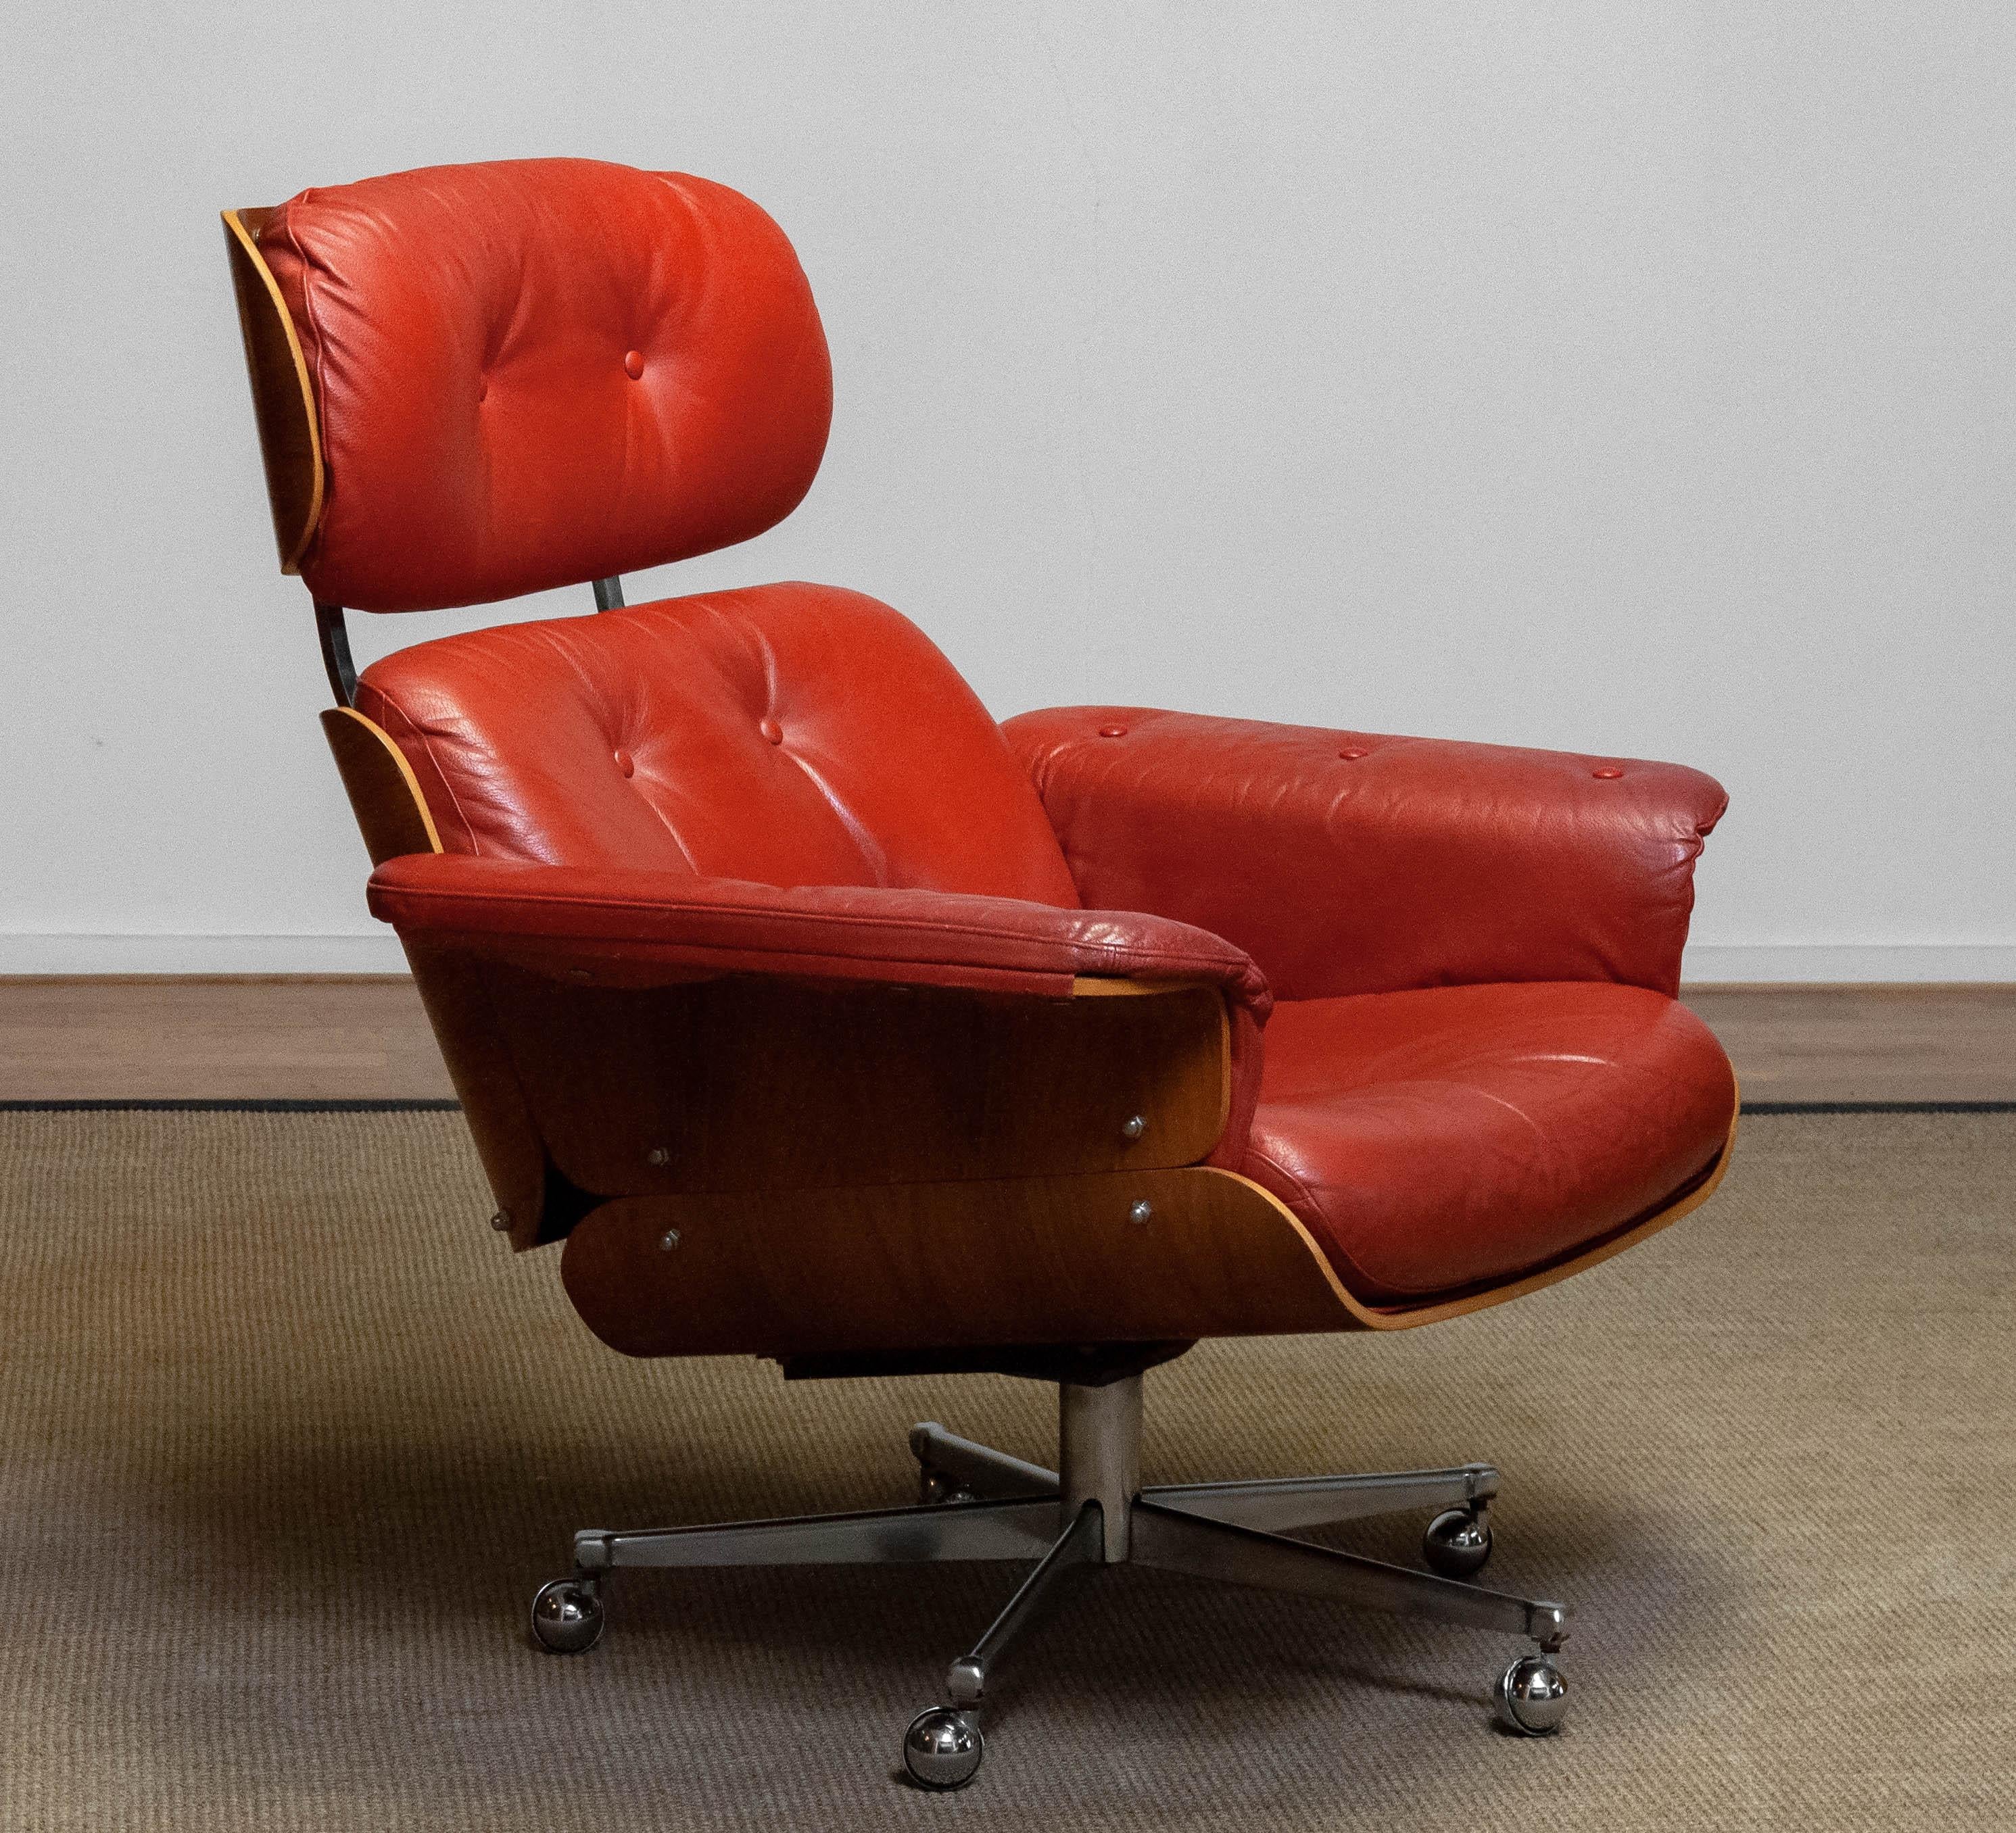 Wunderschöner, verstellbarer Drehstuhl, entworfen von Martin Stoll für Giroflex in der Schweiz, mit den typischen Bugholzschalen wie der berühmte Lounge Chair von Eamens. Dieses Bugholz ist mit wunderschönem, ausgesuchtem (gemasertem) Walnussfurnier